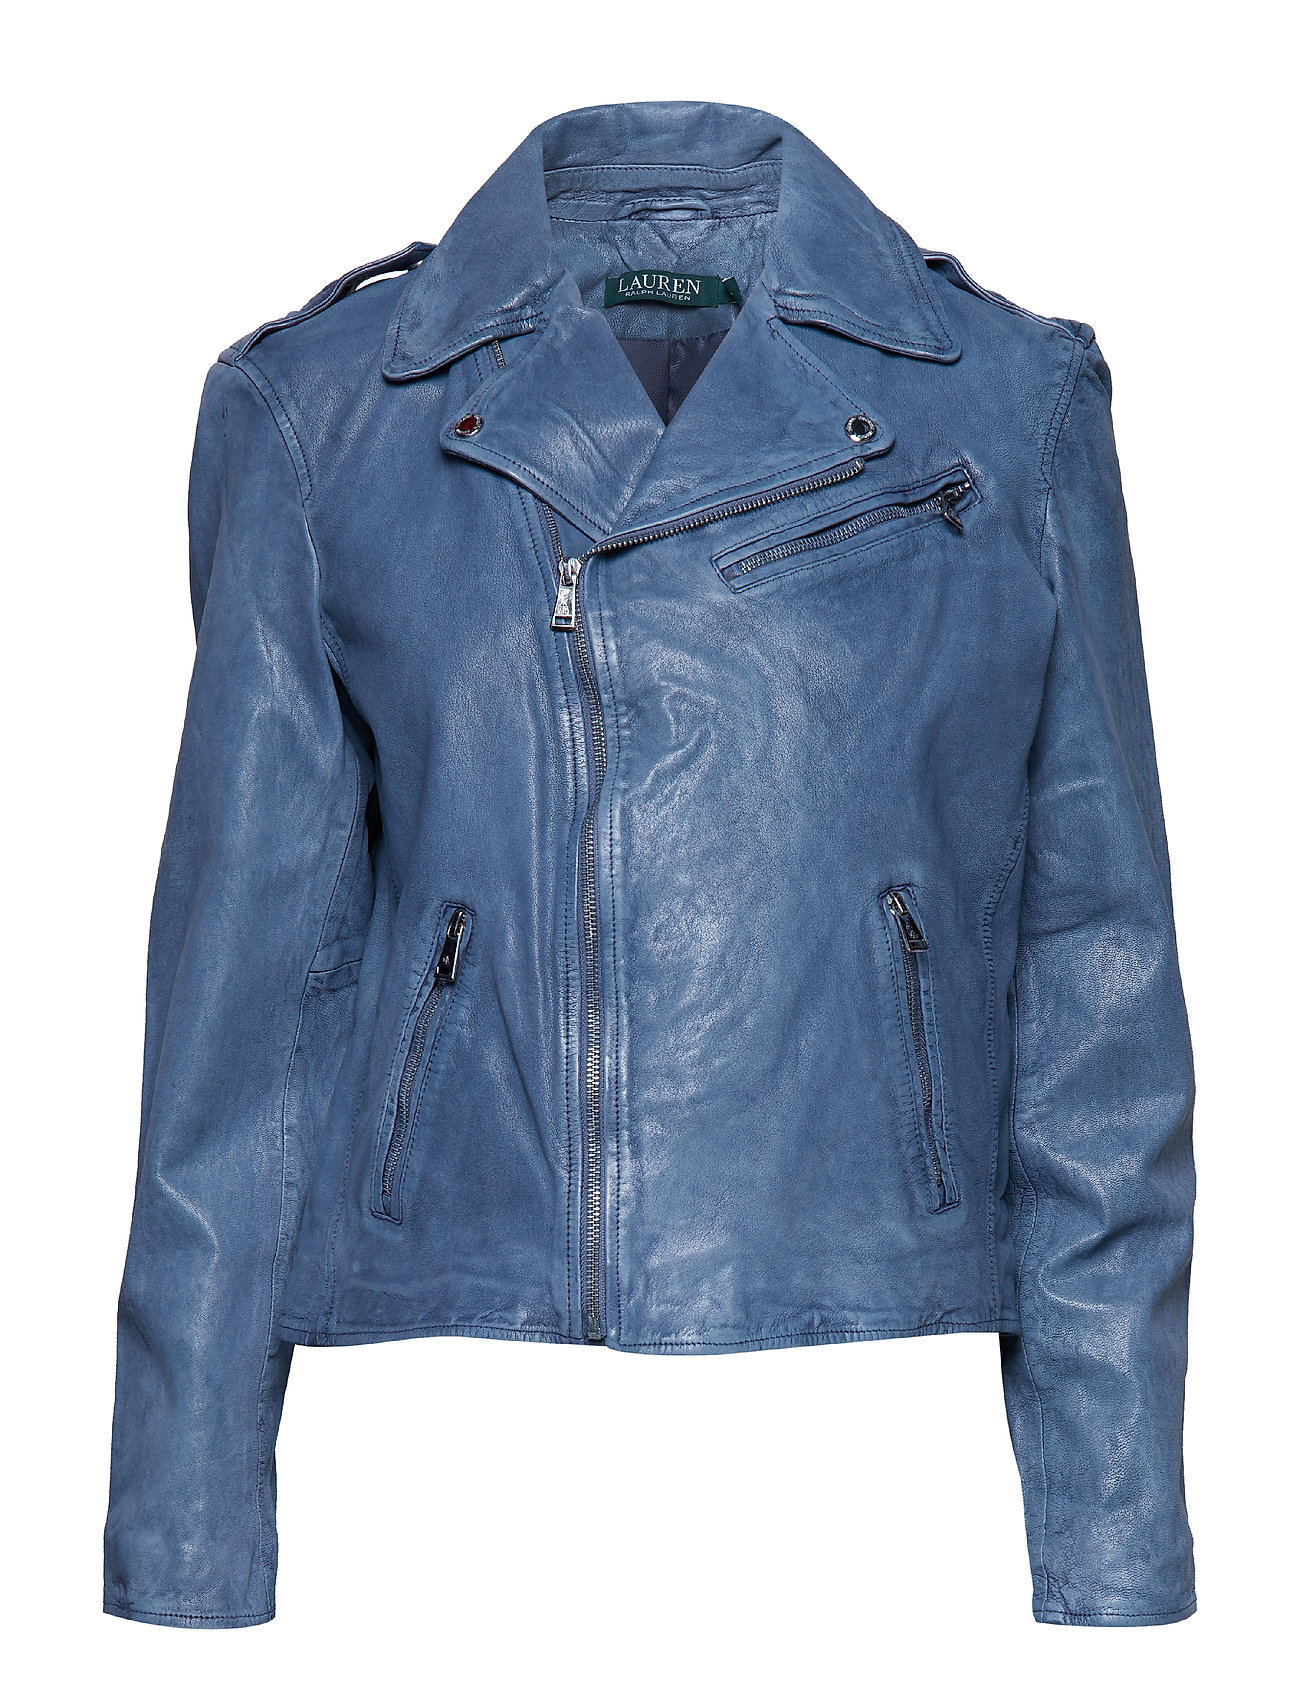 Burnished Leather Jacket (Indigo Leather) (323.95 €) - Lauren Ralph ...